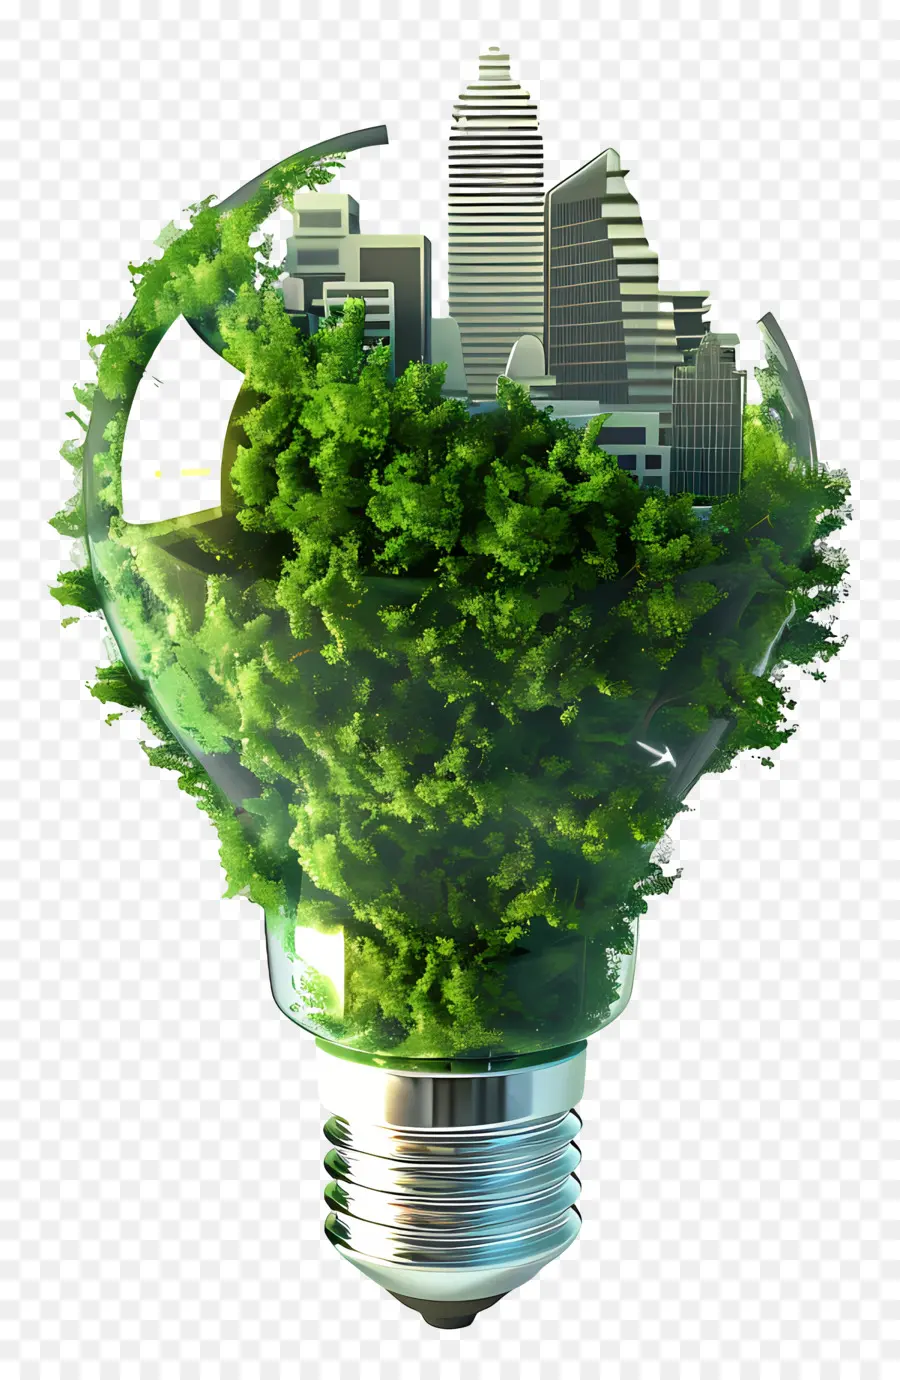 Sostenibilità Eco-friendly Sustainability Recycling Green Plants - Lampadina ecologica fatta di materiali riciclati